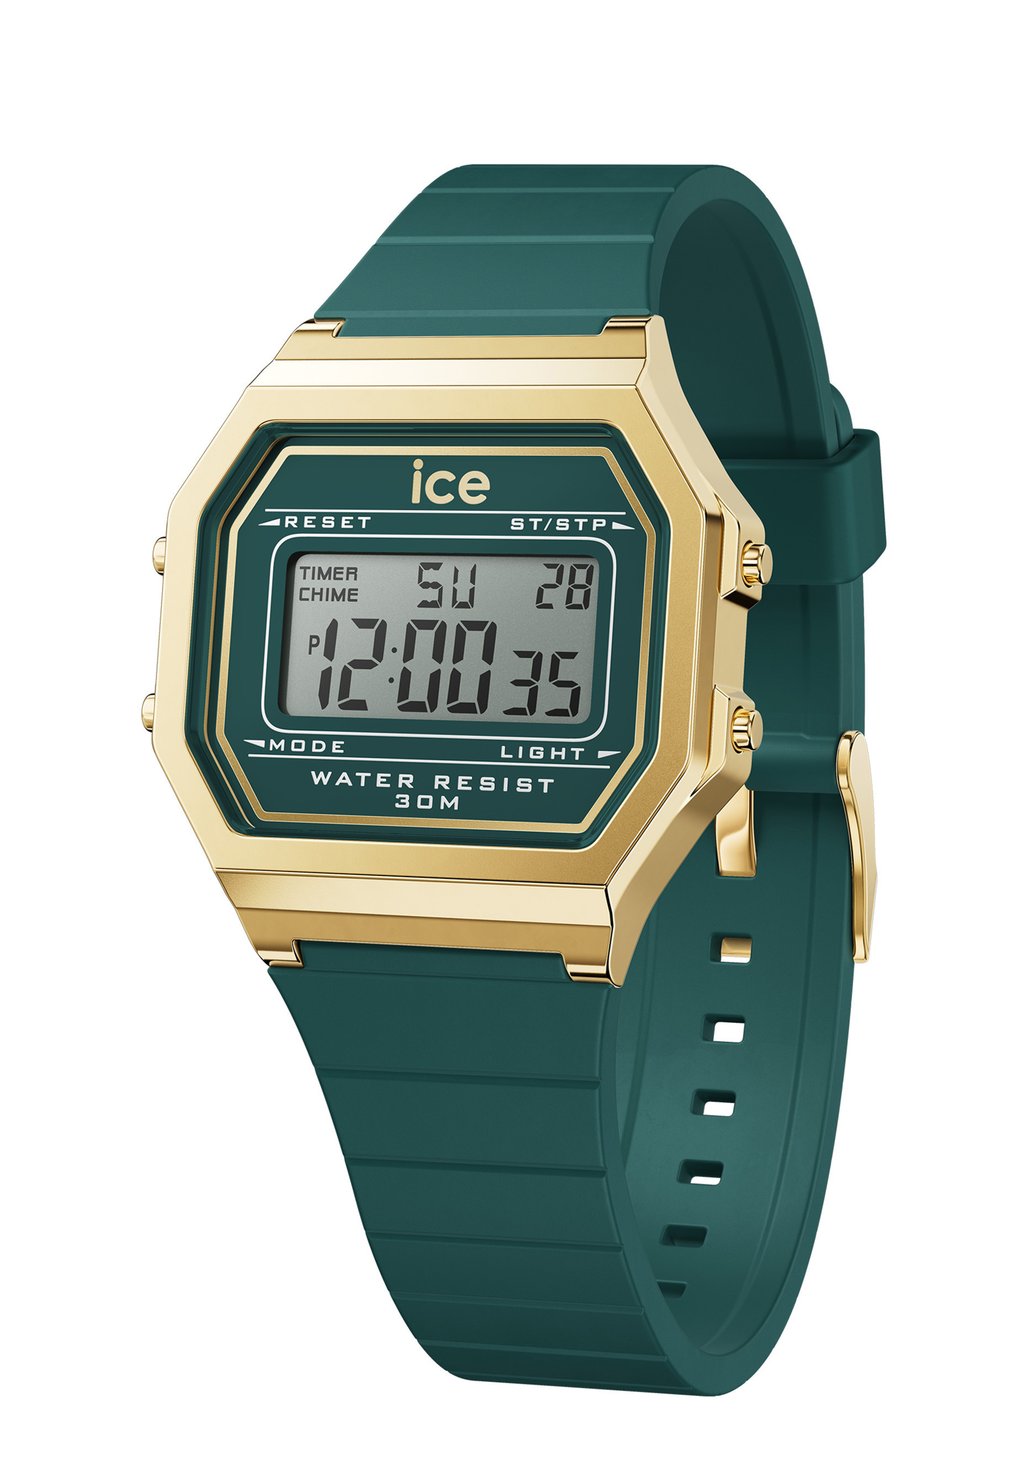 Цифровые часы DIGIT RETRO Ice-Watch, цвет verdigris s napapijri s ice